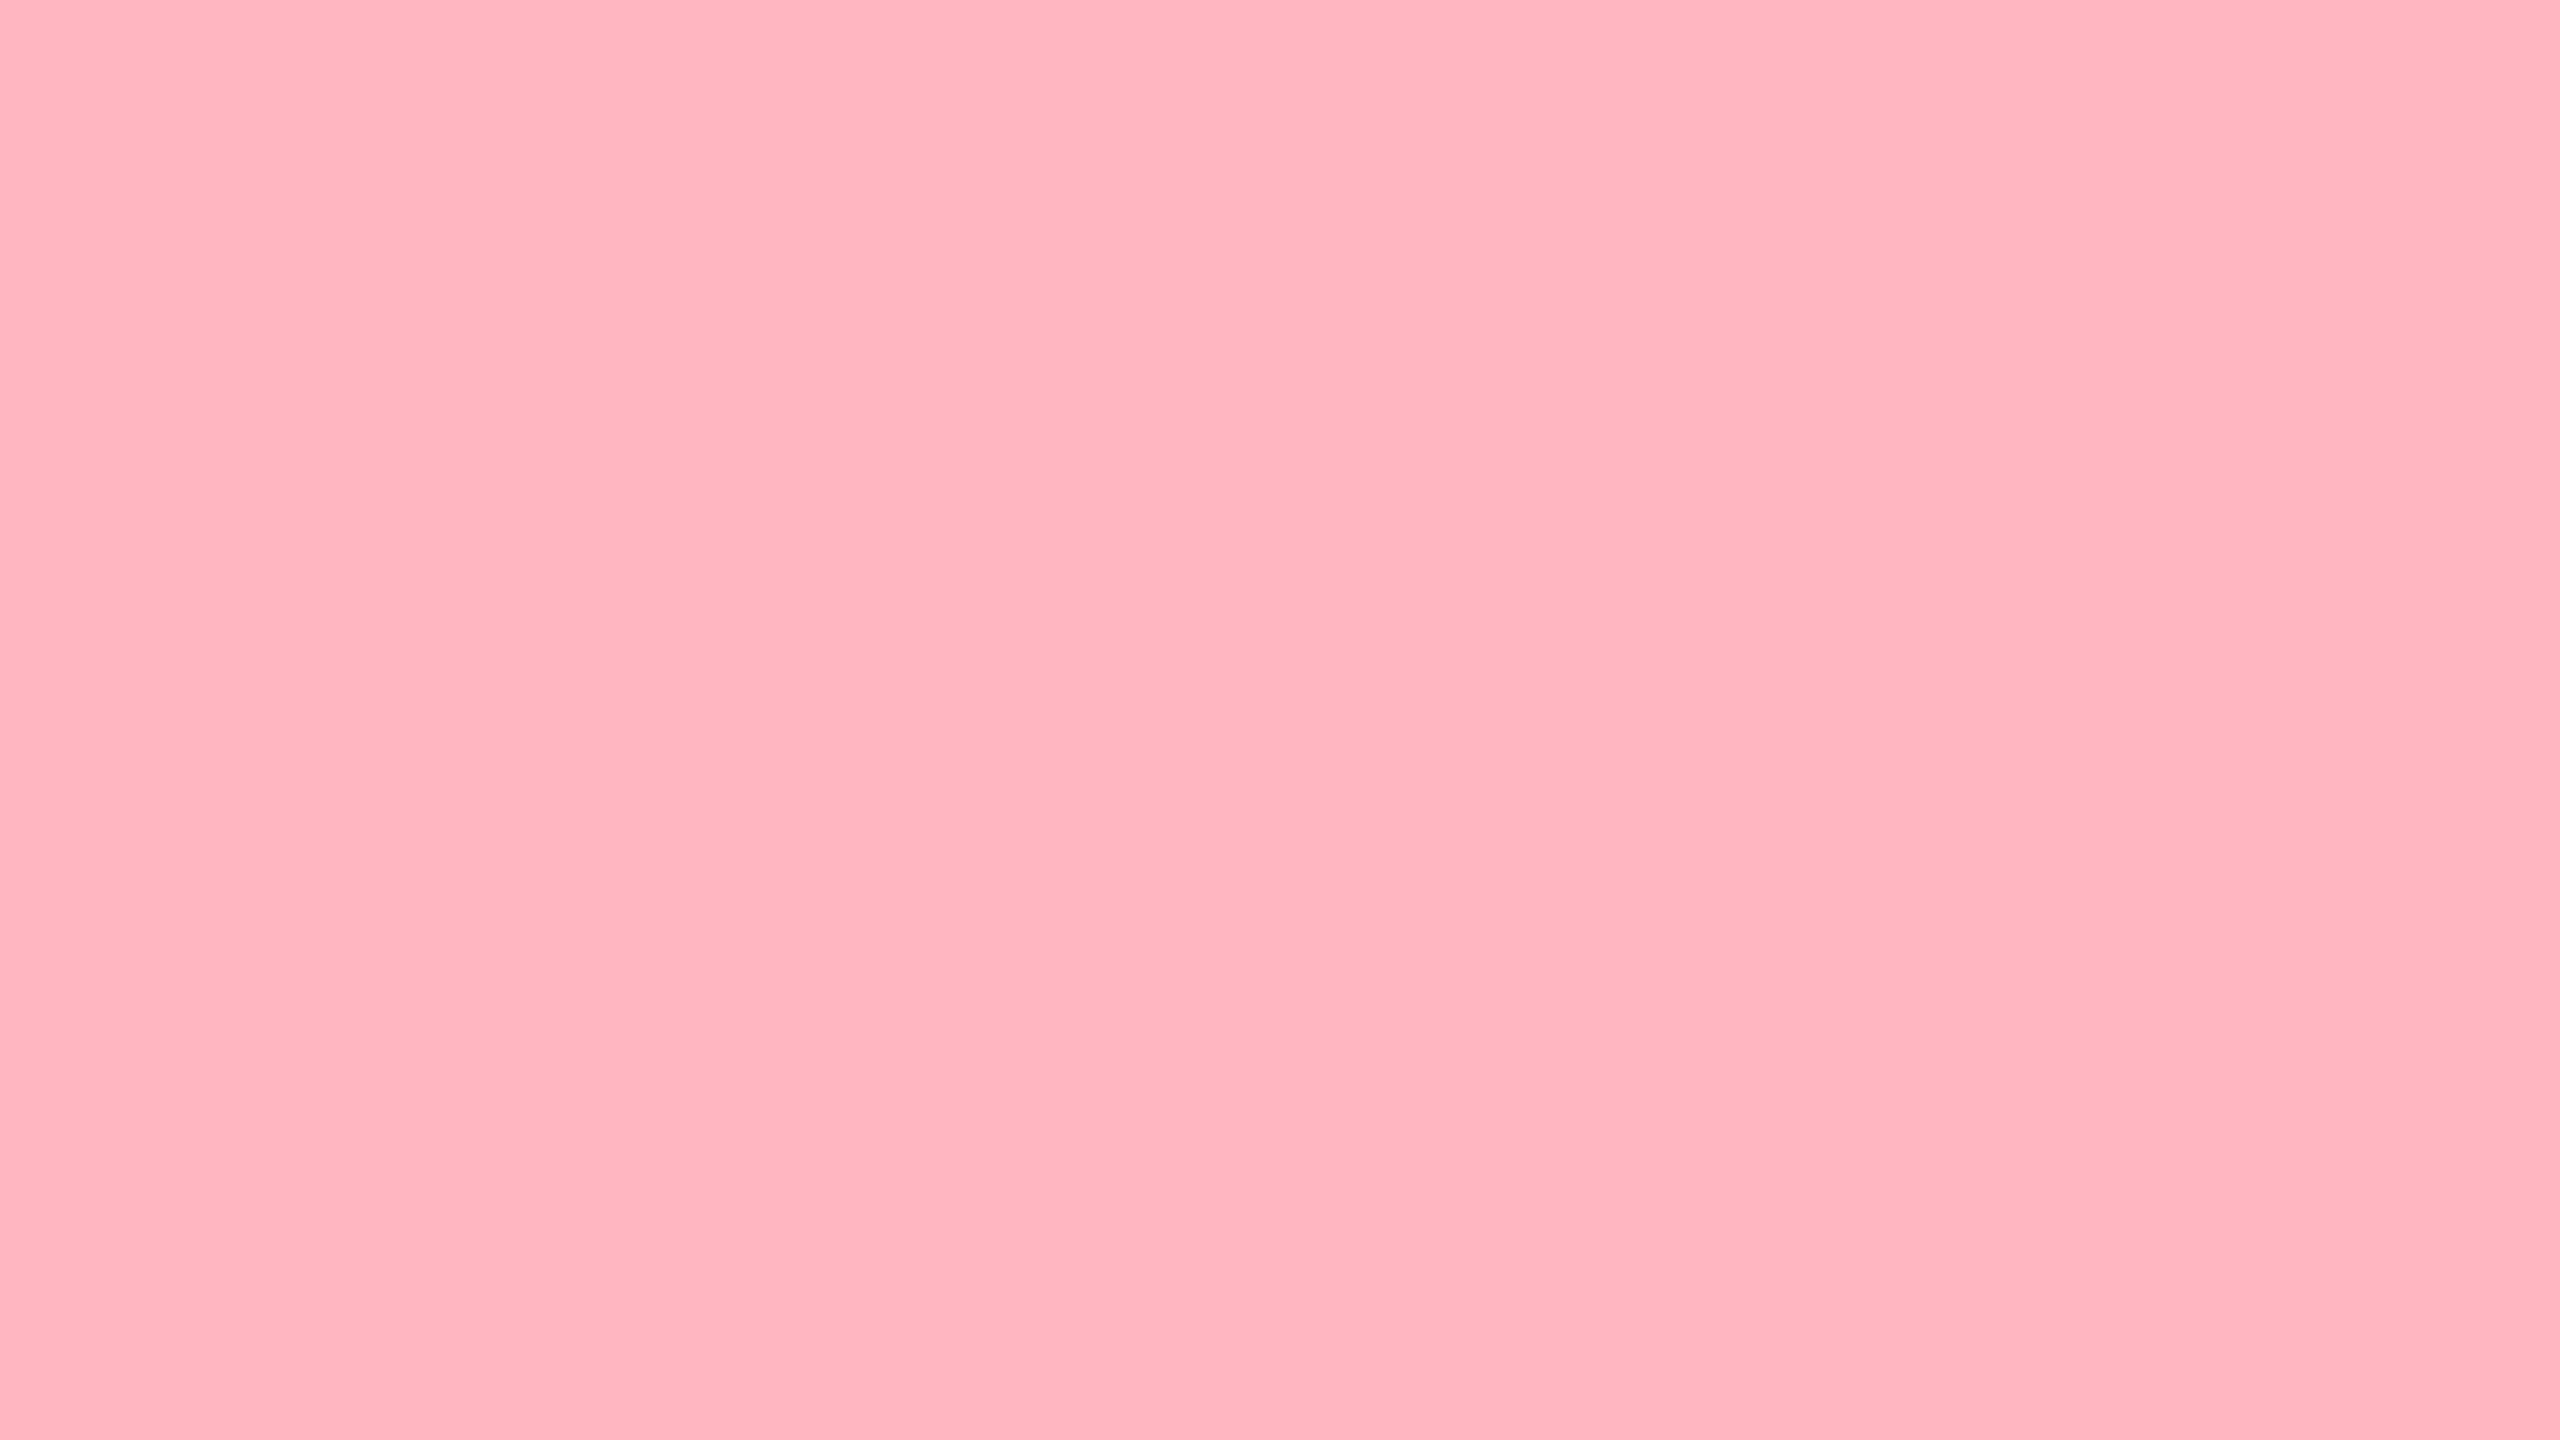 Fondos de color rosa claro